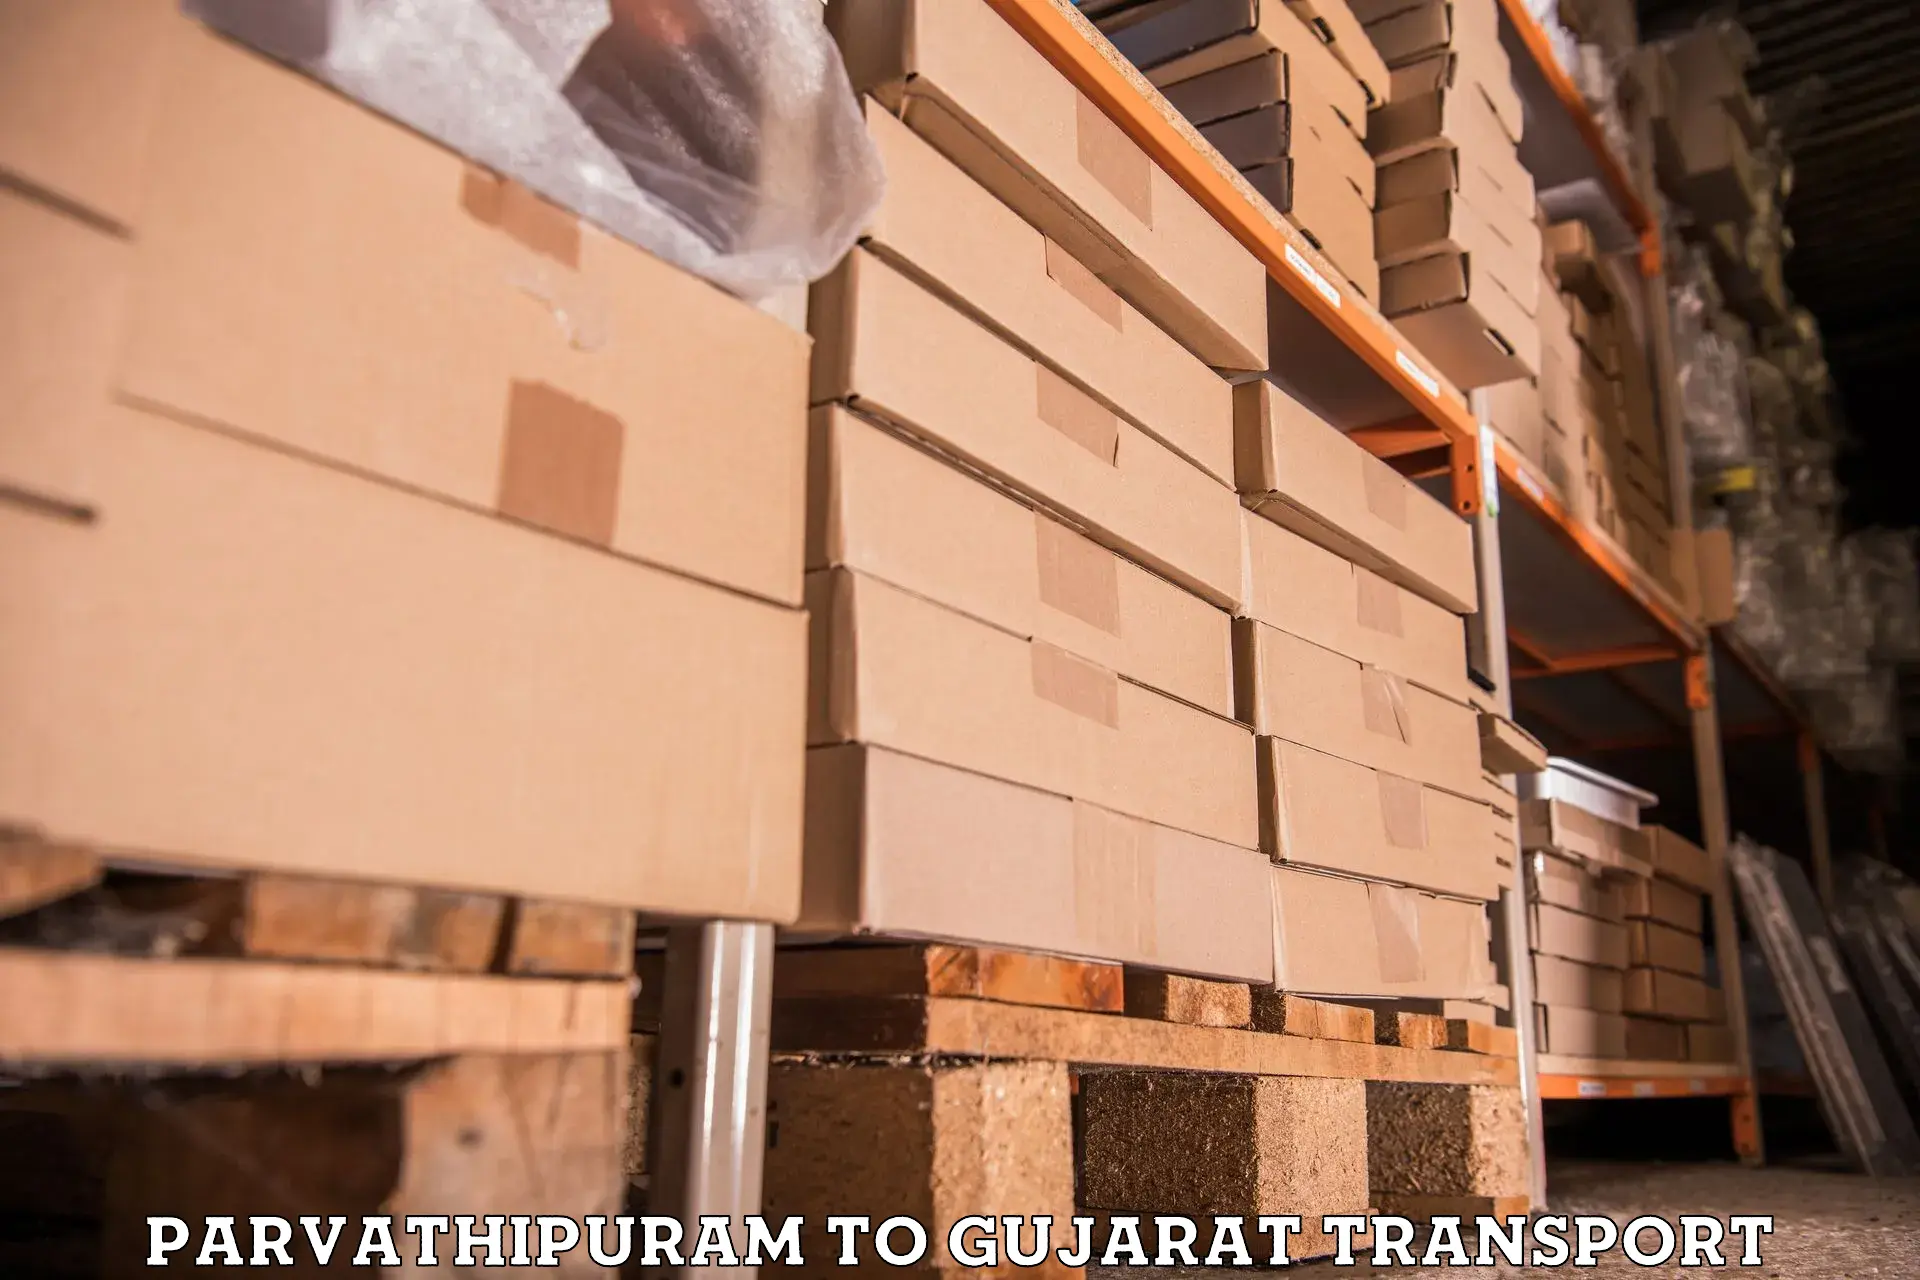 Transport in sharing Parvathipuram to Gujarat